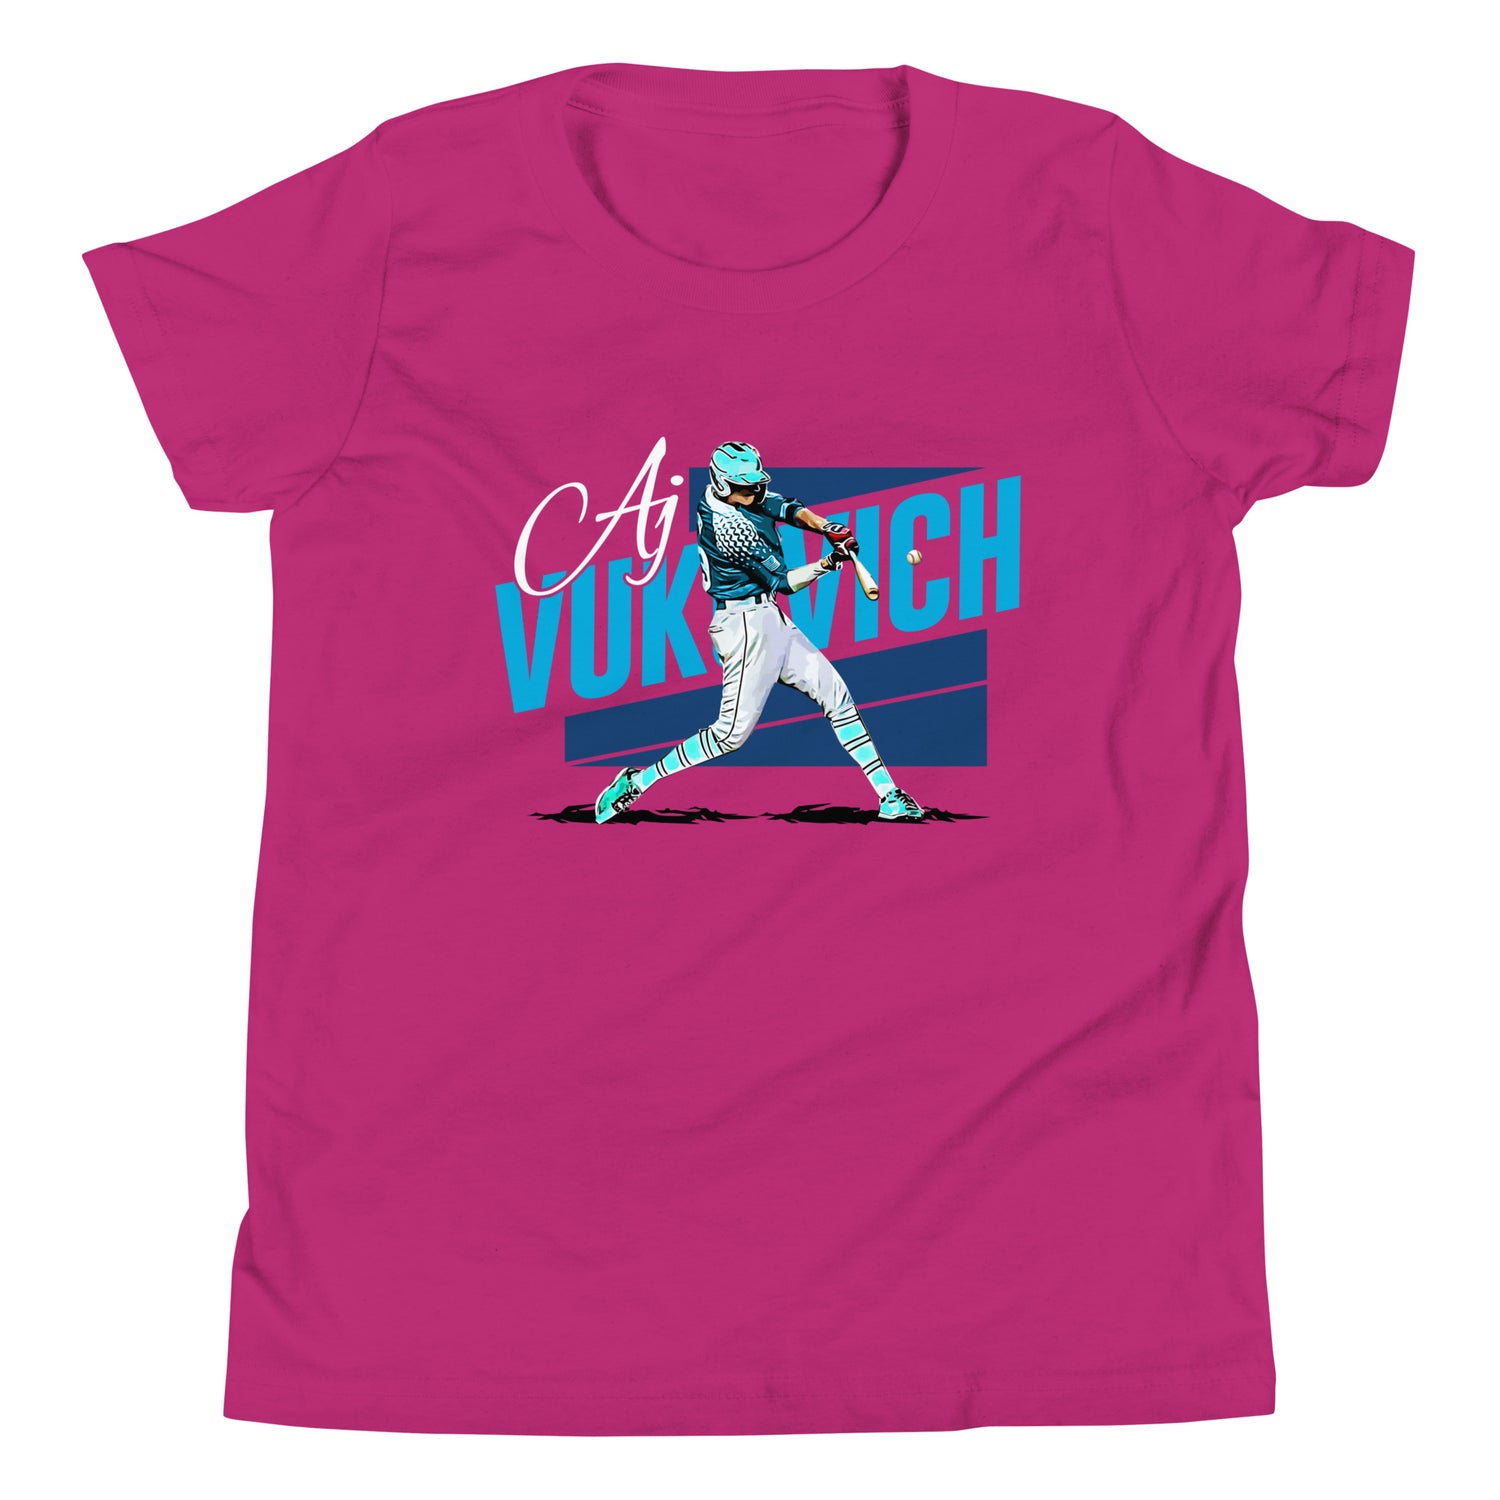 AJ Vukovich "Icon" Youth T-Shirt - Fan Arch